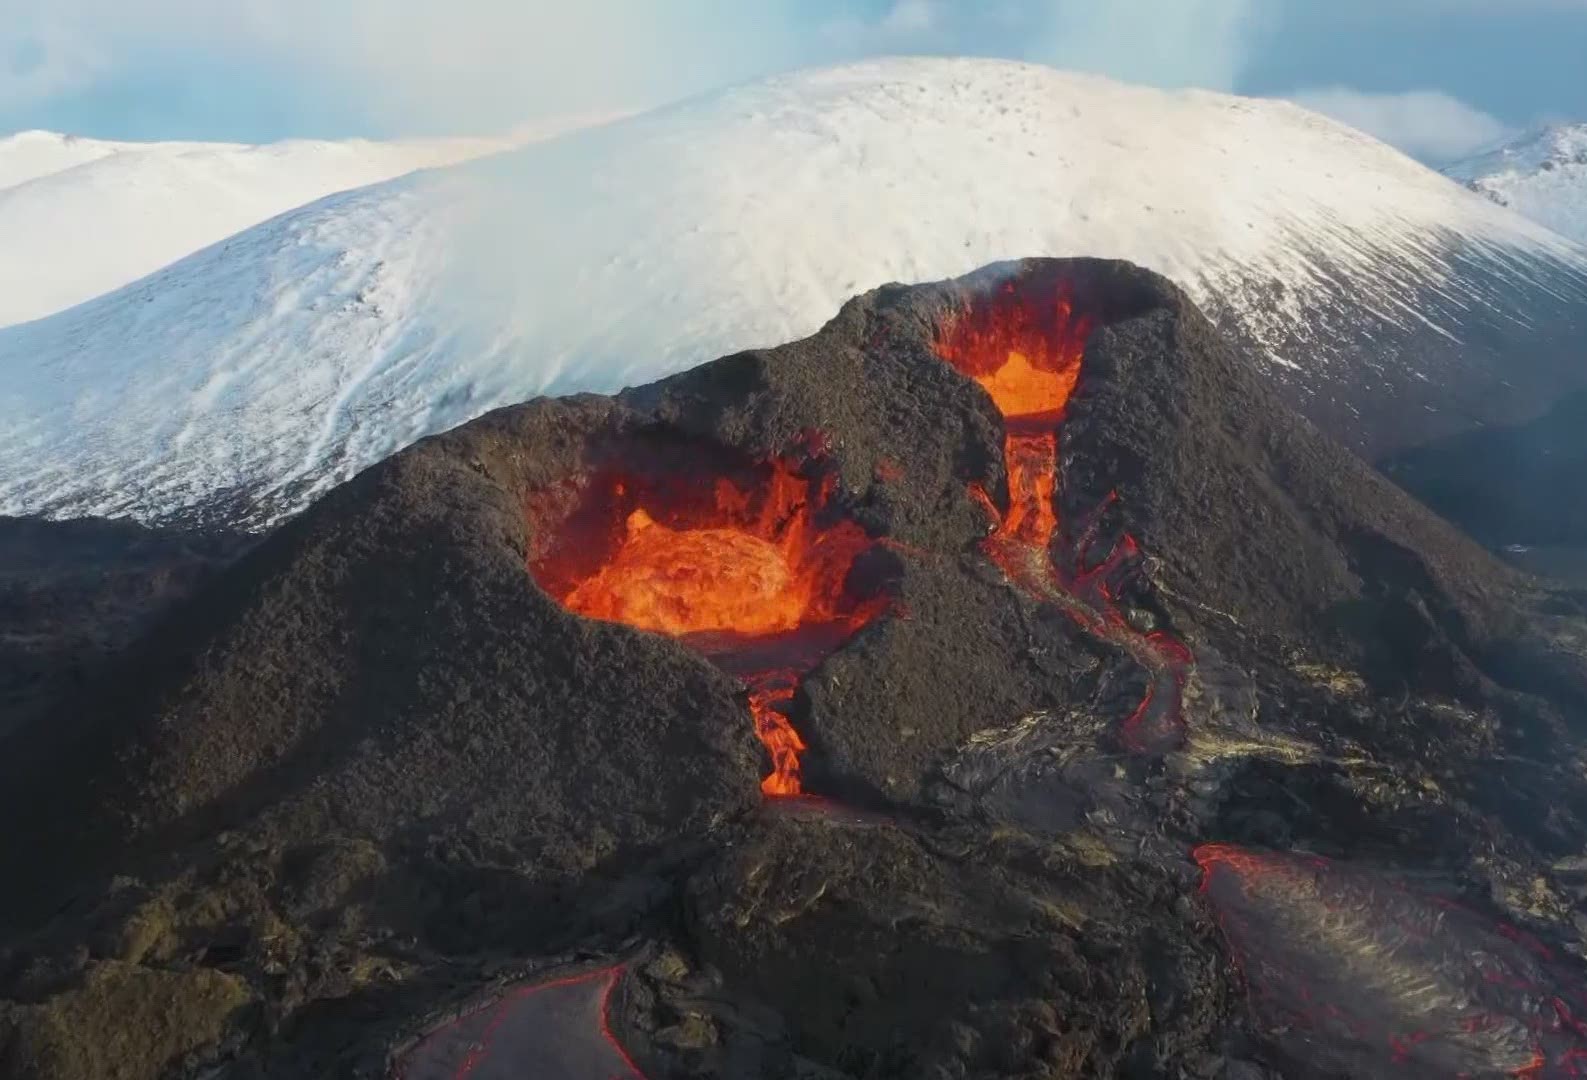 عکس حفره های مواد مذاب در بزرگترین کوه های آتشفشان فعال